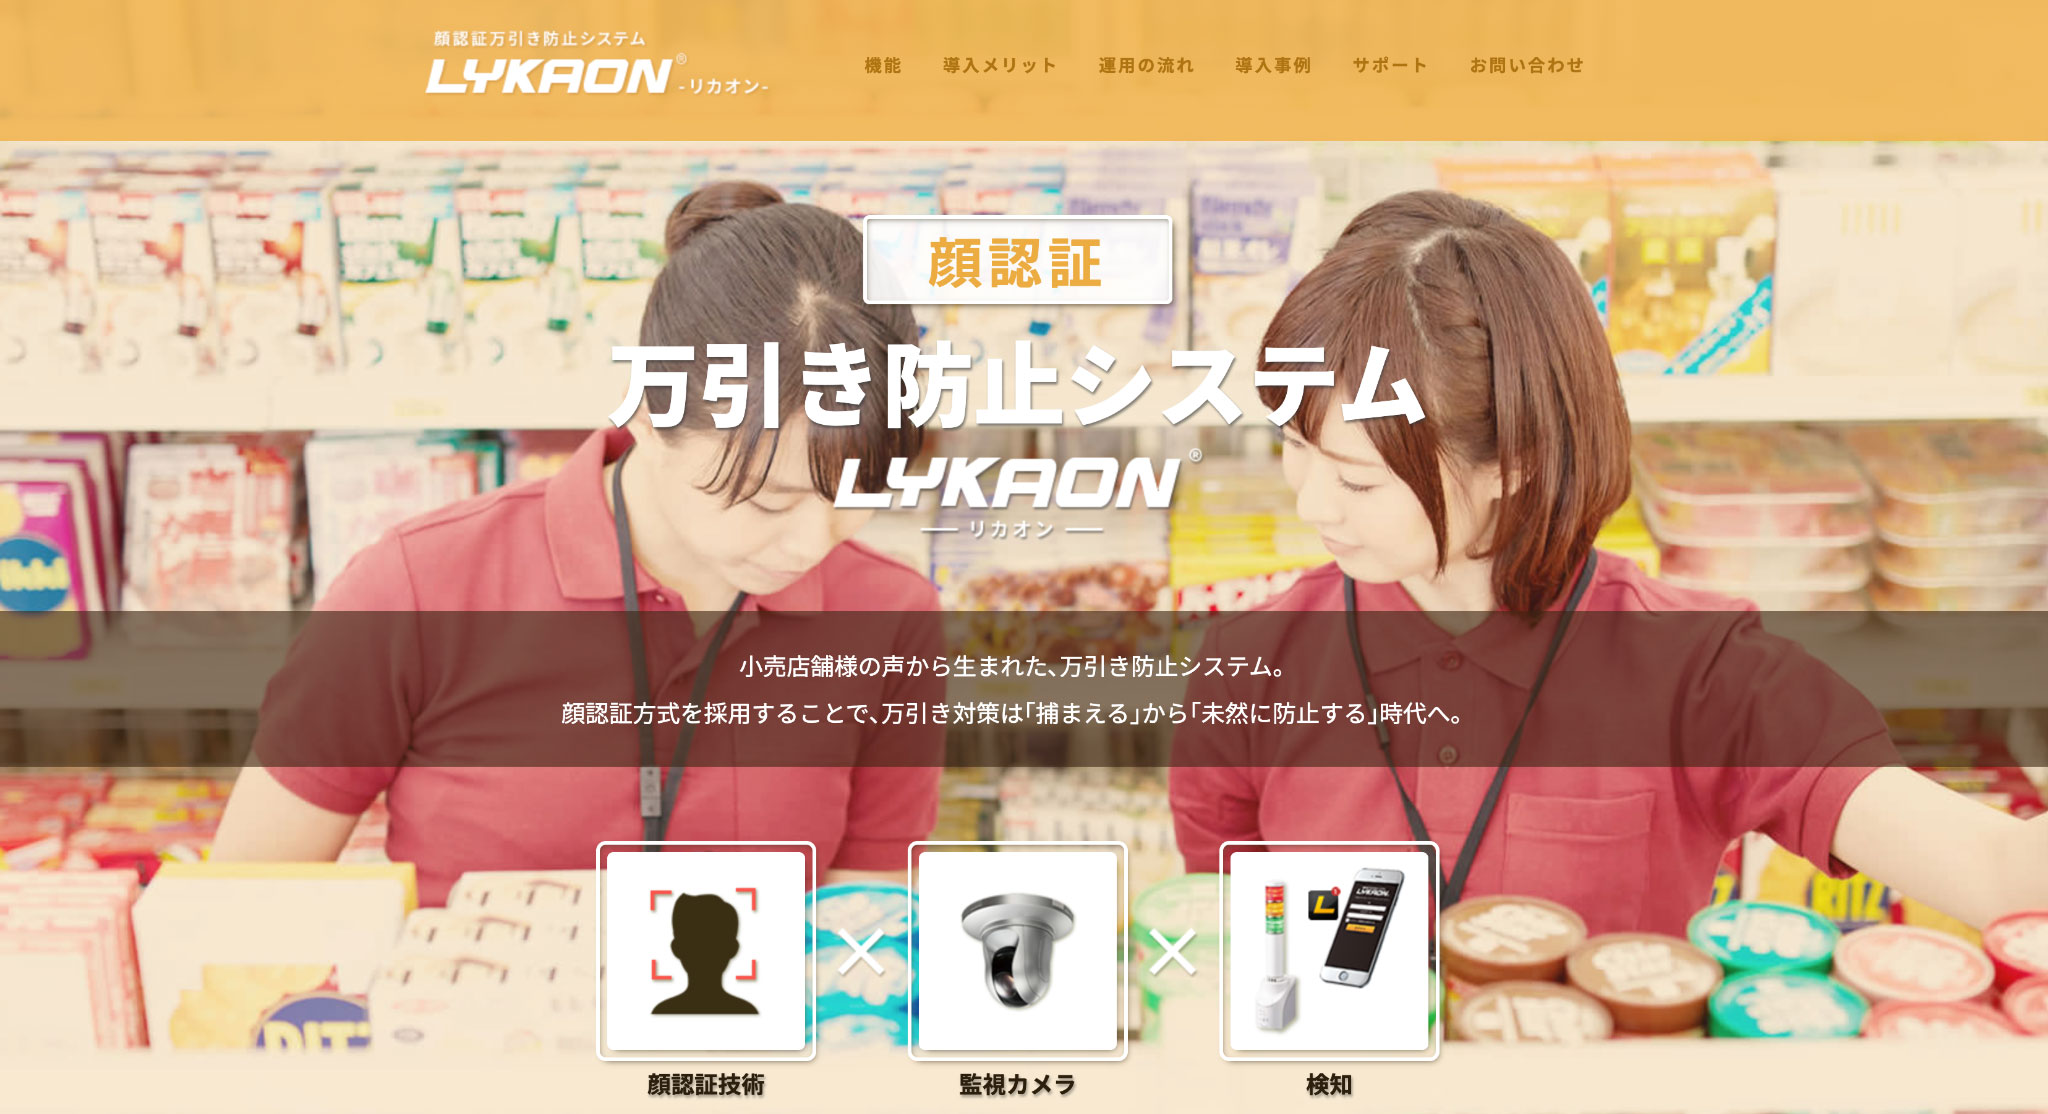 出典）顔認証万引き防止システム【LYKAON】-エナジール株式会社